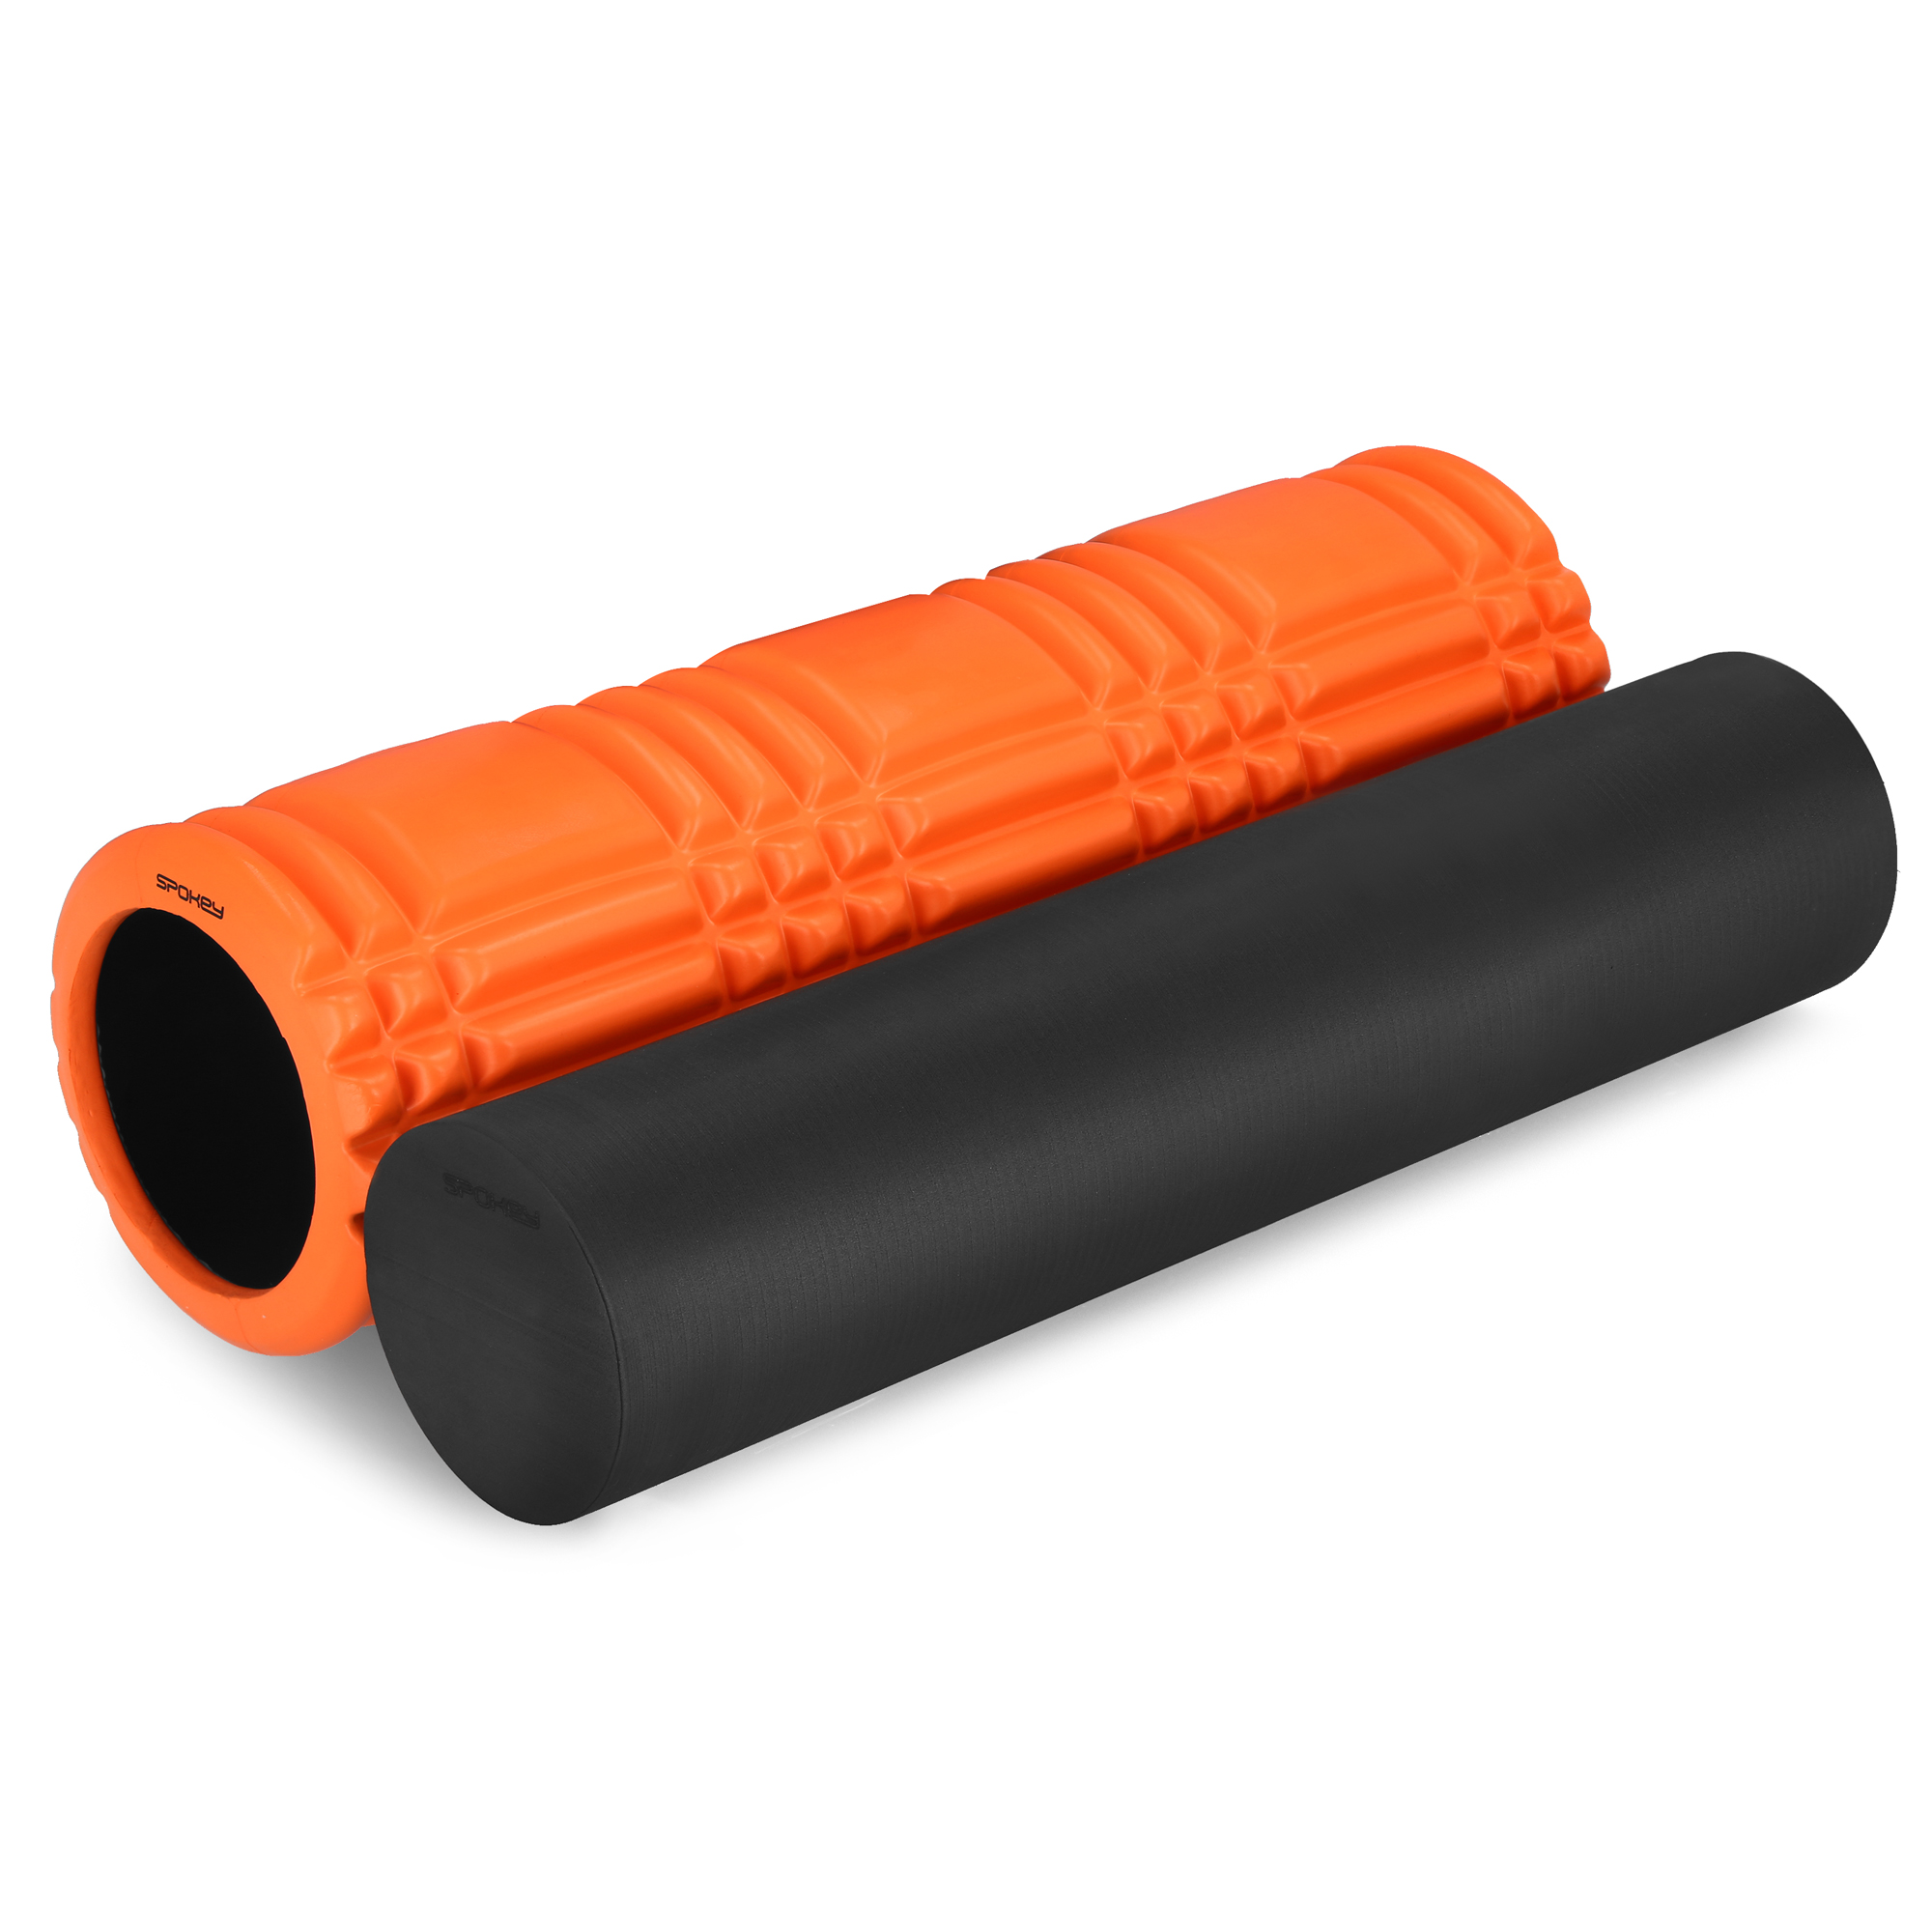 Zestaw wałków fitness 2w1 roller (2 części) pomarańczowy Spokey MIXROLL 2in1